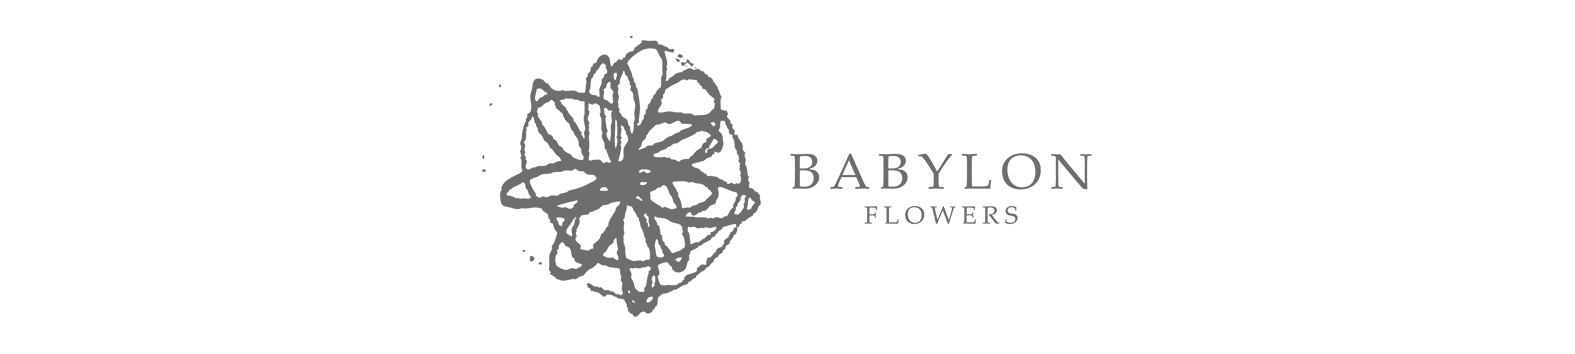 BABYLON FLOWERS LOGO